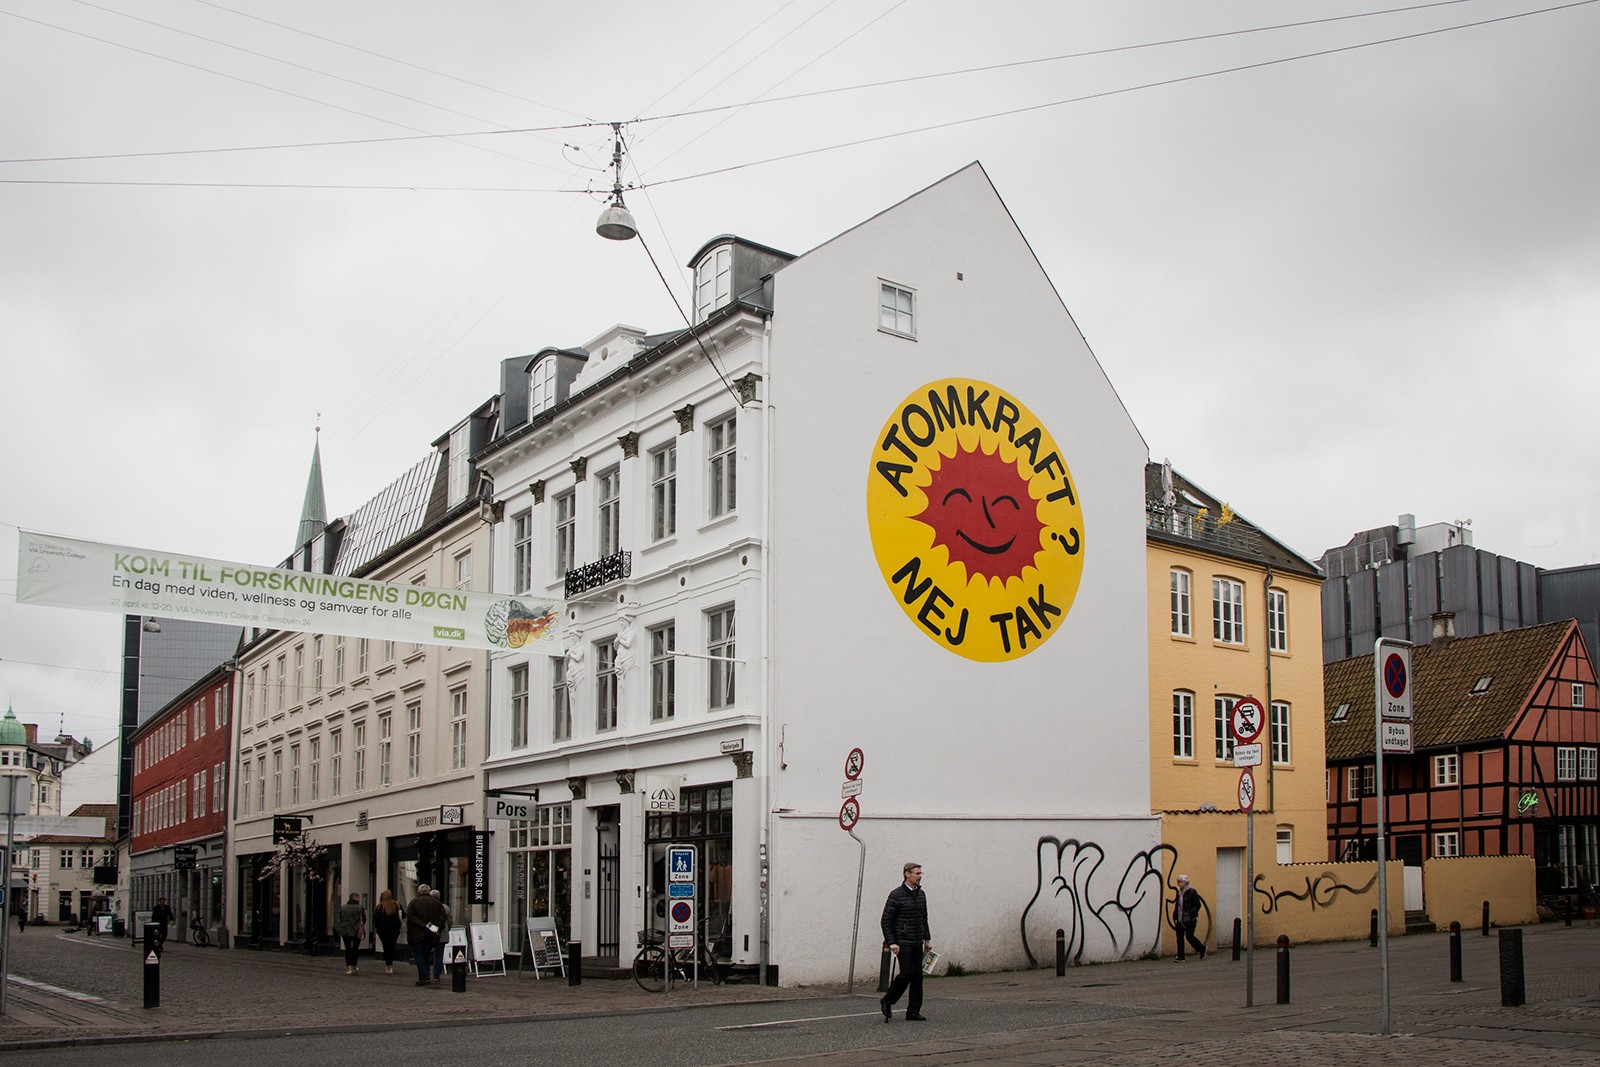 Gavlmalerier i Aarhus</br>Gavlmaleriet kan ses på Vestergade. Logoet til Atomkraft? Nej tak er designet af aktivisten Anne Lund i 1975. Solmærket er blevet et af de mest berømte logoer i verden.</br>Foto: Mariana Gil